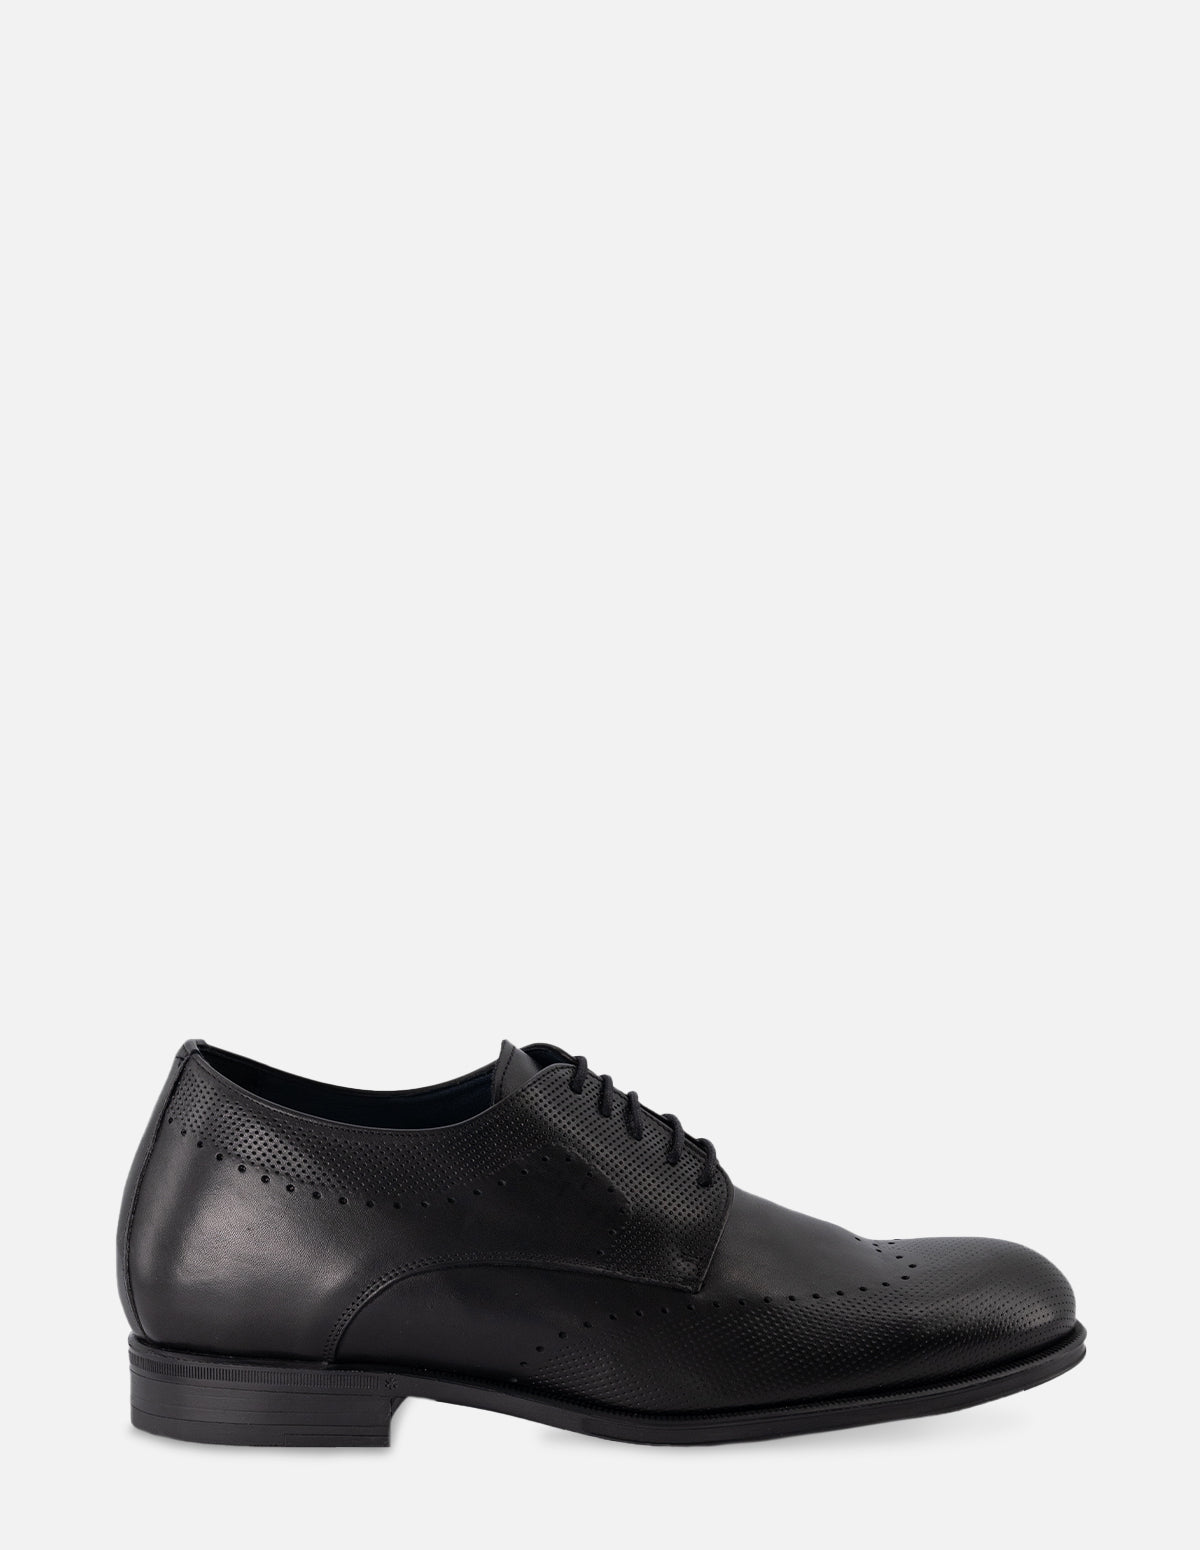 Zapato Bostoniano +7 en piel color negro con picado para hombre